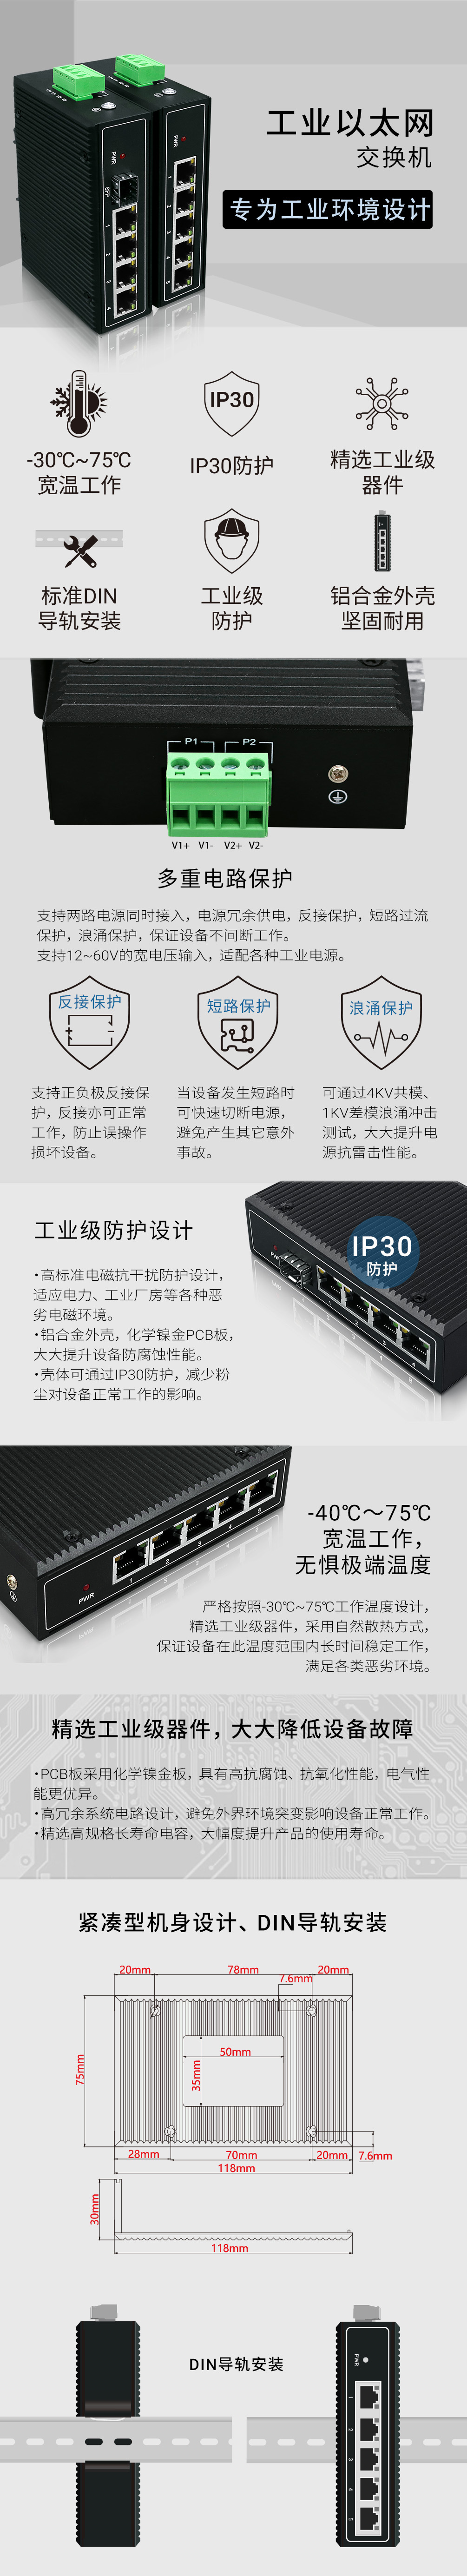 YN-SG105S工业以太网交换机